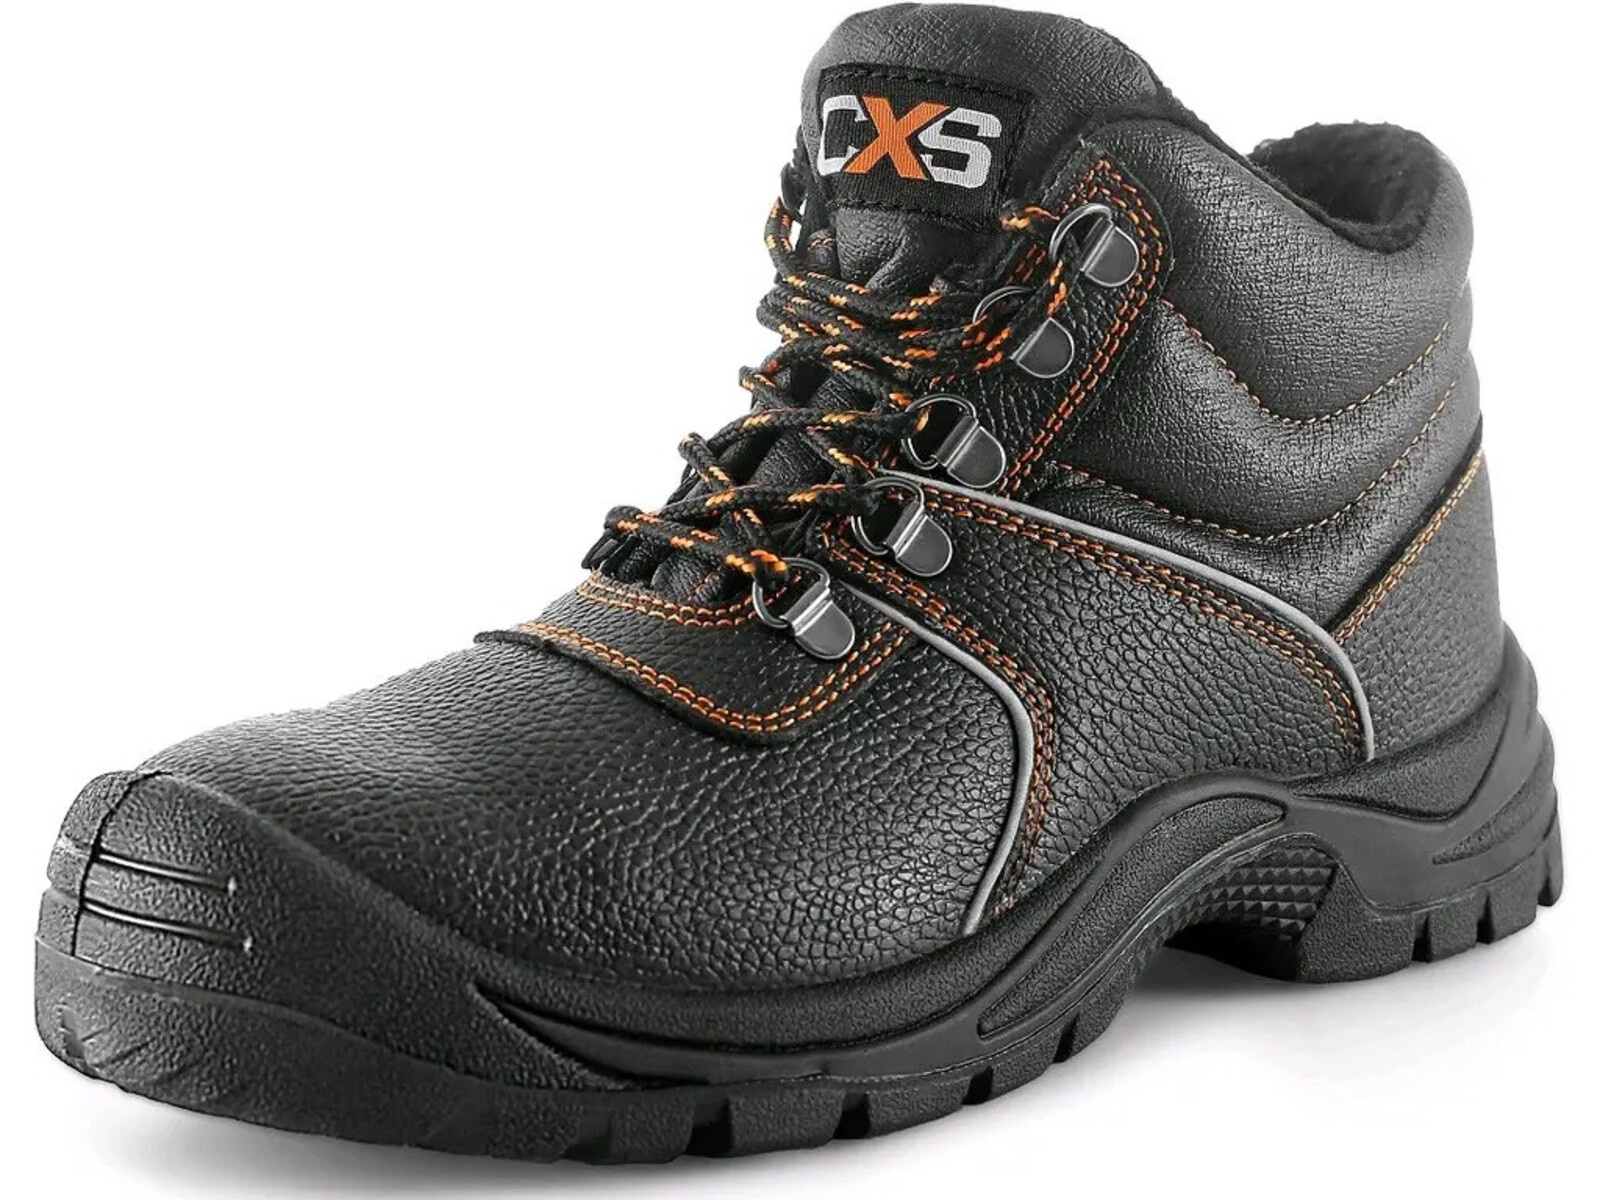 Zimná bezpečnostná členková obuv CXS Stone Apatit Winter S3 SRC - veľkosť: 45, farba: čierna/oranžová